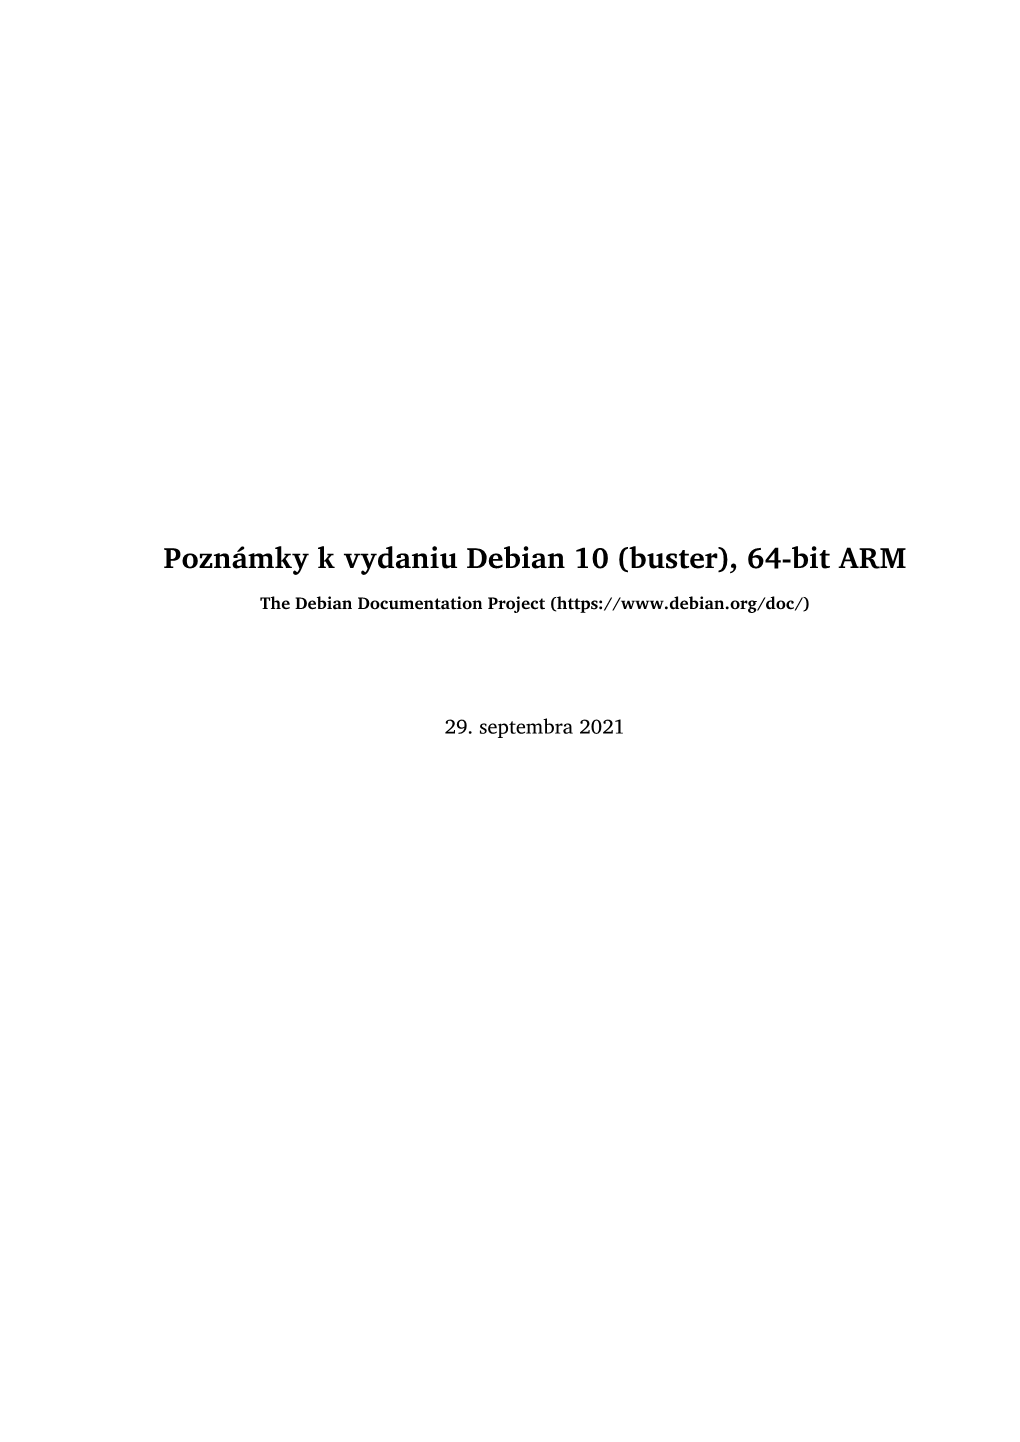 Poznámky K Vydaniu Debian 10 (Buster), 64-Bit ARM